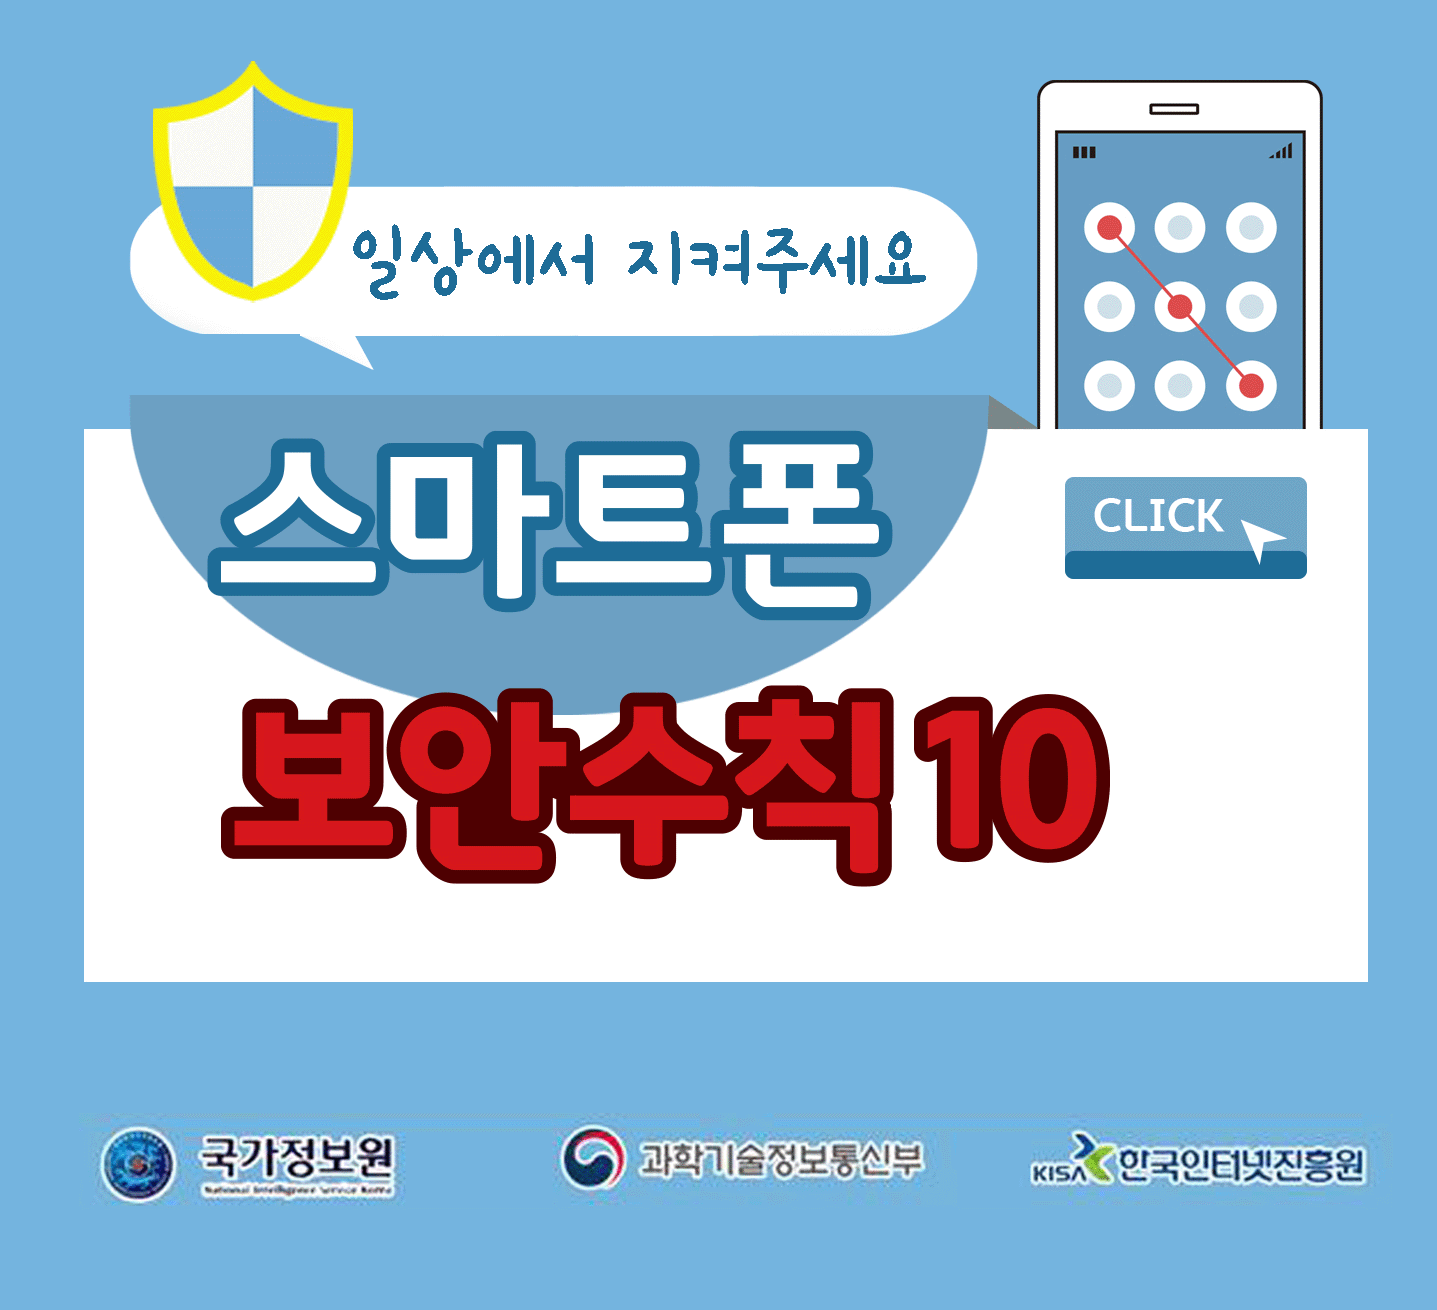 일상에서 지켜주세요
스마트폰 보안수칙 10 CLICK
국가정보원, 과학기술정보통신부, 한국인터넷진흥원;jsessionid=39F9D208830867F983BAF7976C792662